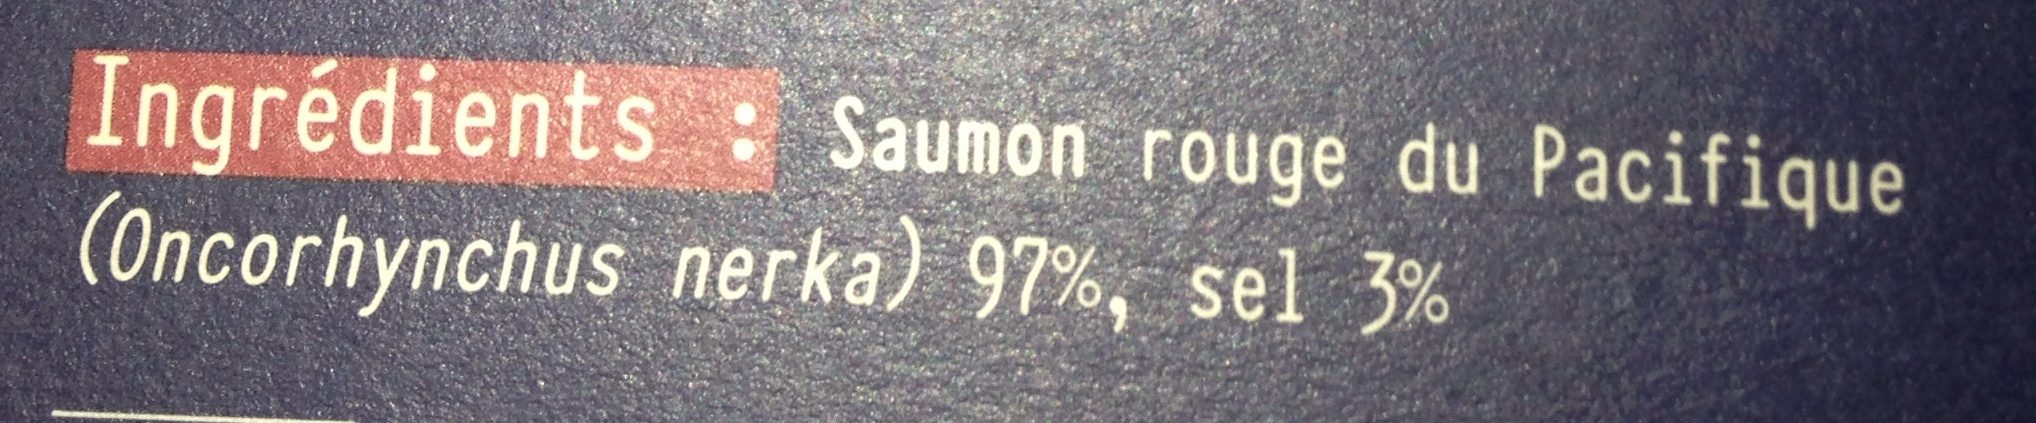 Saumon rouge du pacifique fumé ARMORIC, 5 petites tranches - Ingredients - fr